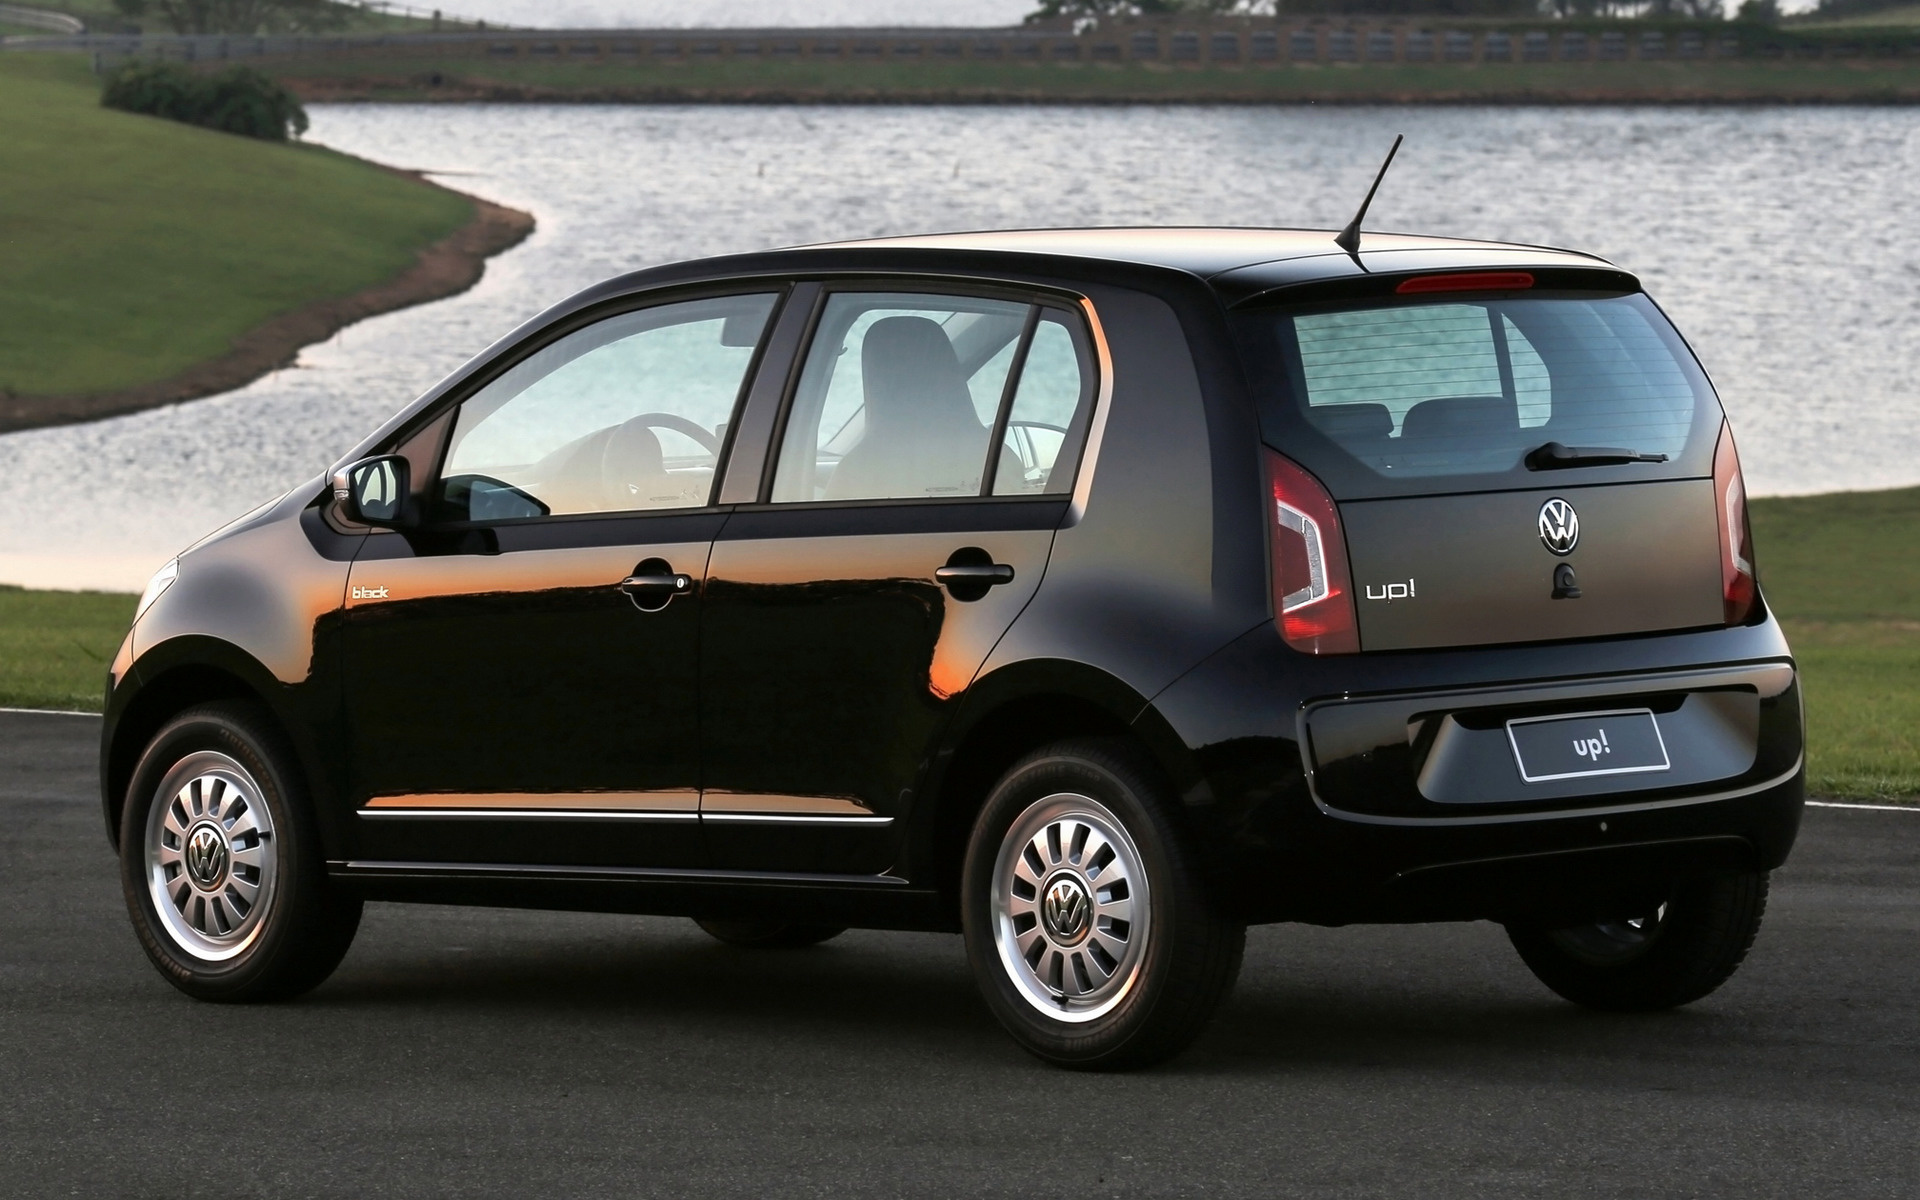 2014 Volkswagen black up! 5-door (BR) - Wallpapers and HD Images | Car